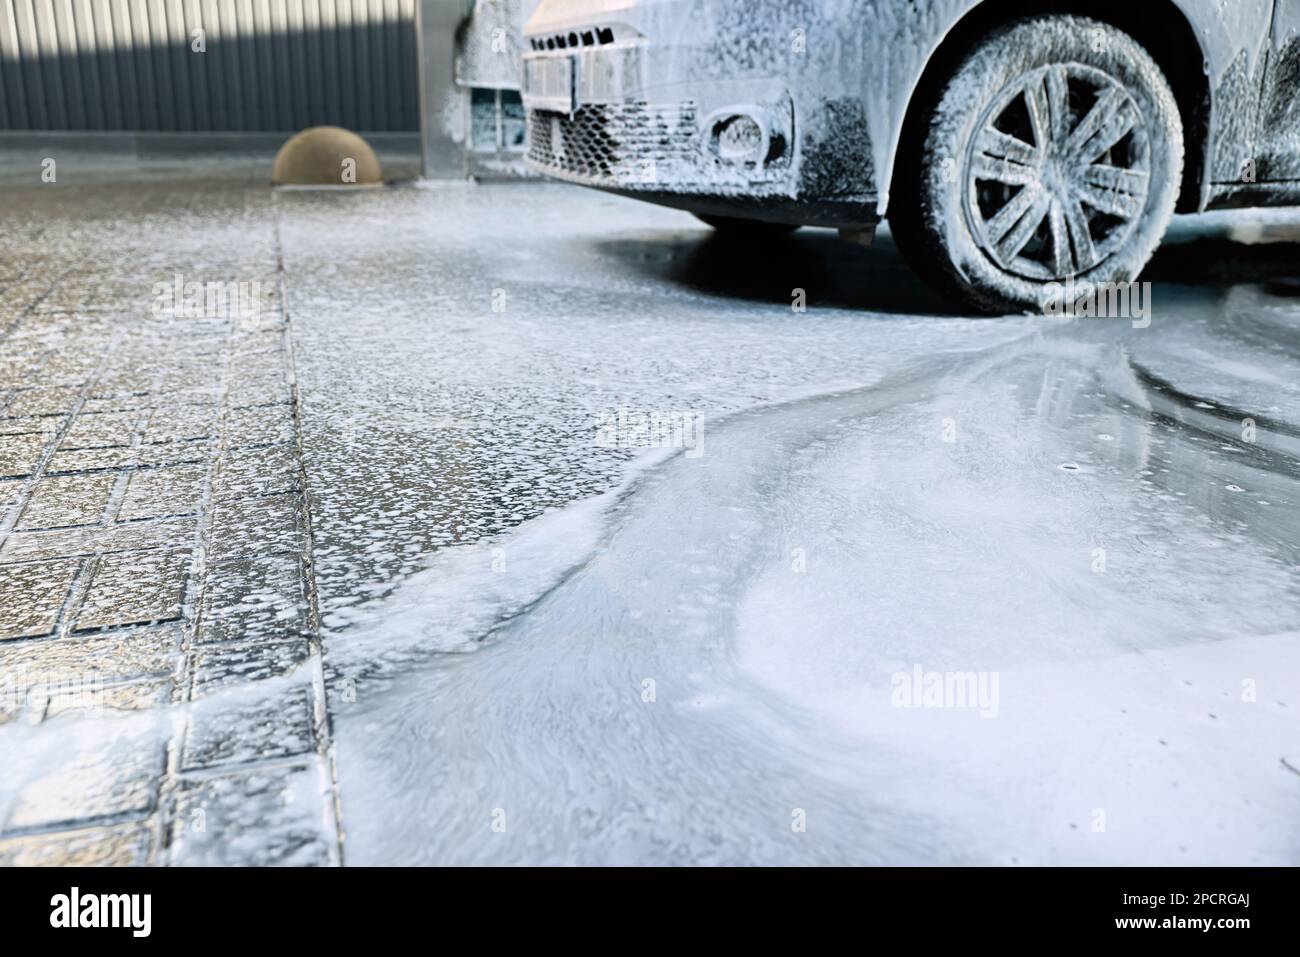 Auto waschen. Reinigung modernes Auto von Schaum bedeckt Stockfotografie -  Alamy